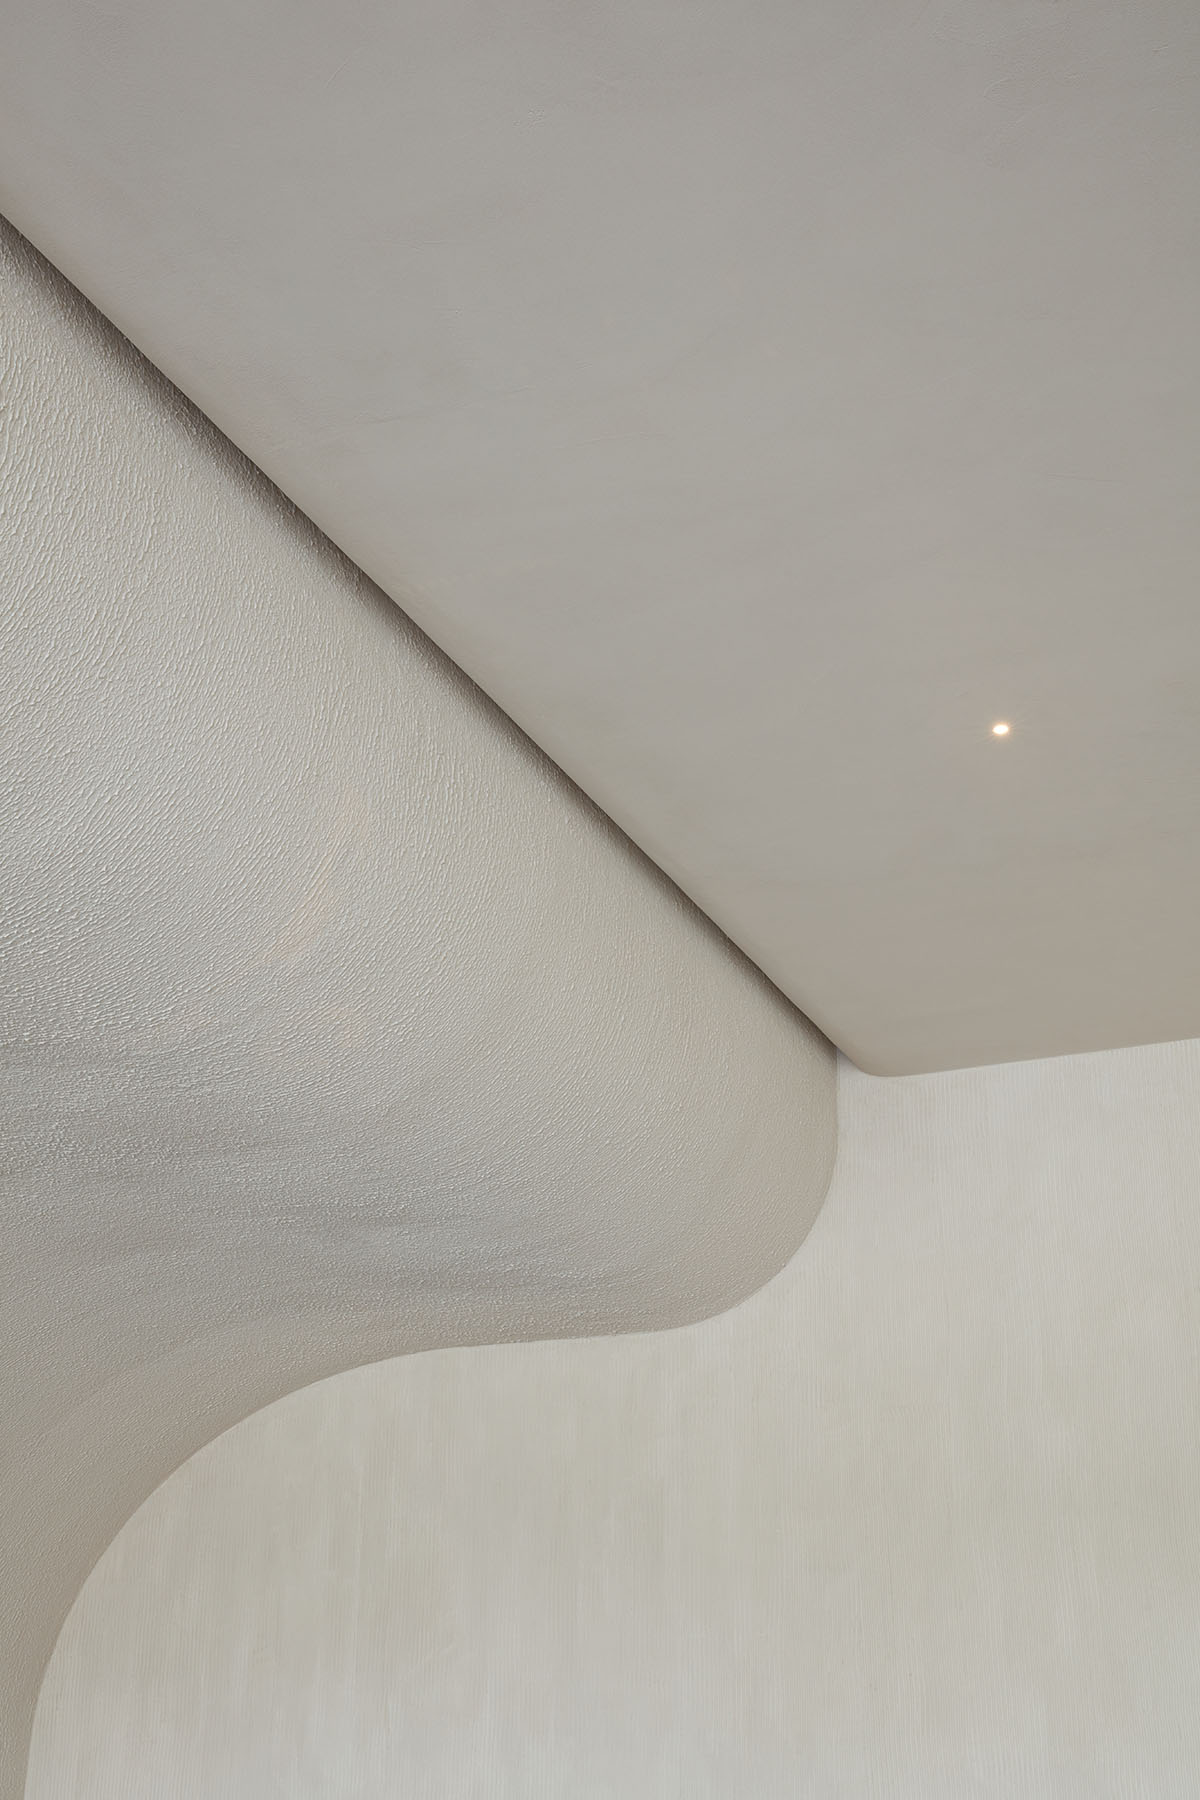 Интерьер кофейни от VSHD с большими каменными блоками неправильной формы и изогнутым потолком в Дубае.